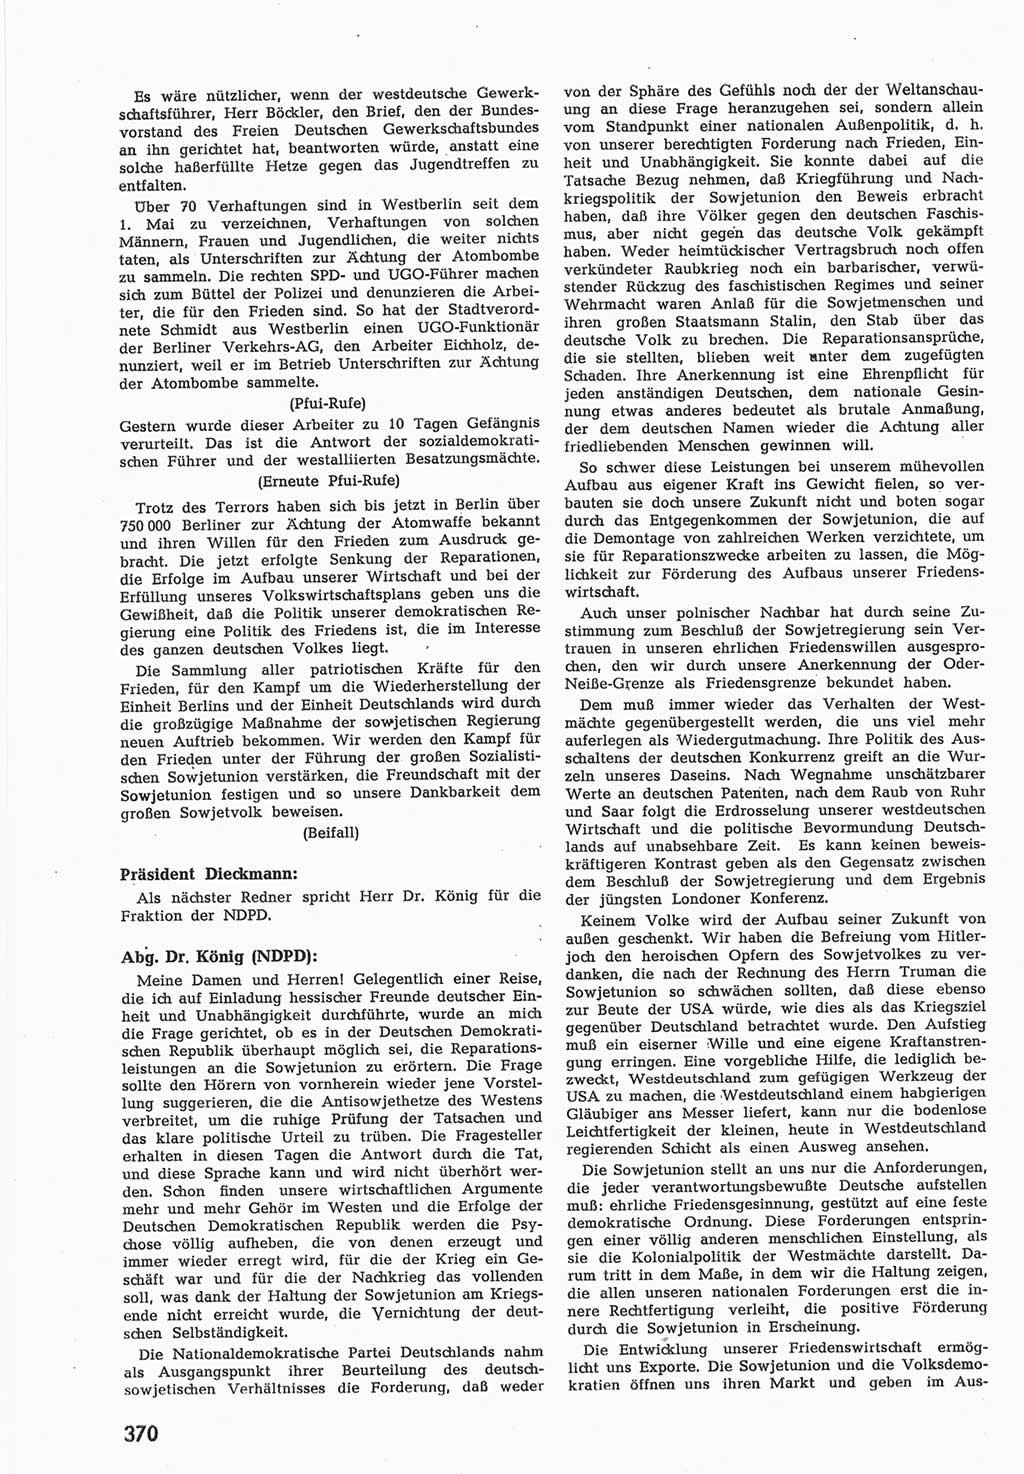 Provisorische Volkskammer (VK) der Deutschen Demokratischen Republik (DDR) 1949-1950, Dokument 388 (Prov. VK DDR 1949-1950, Dok. 388)